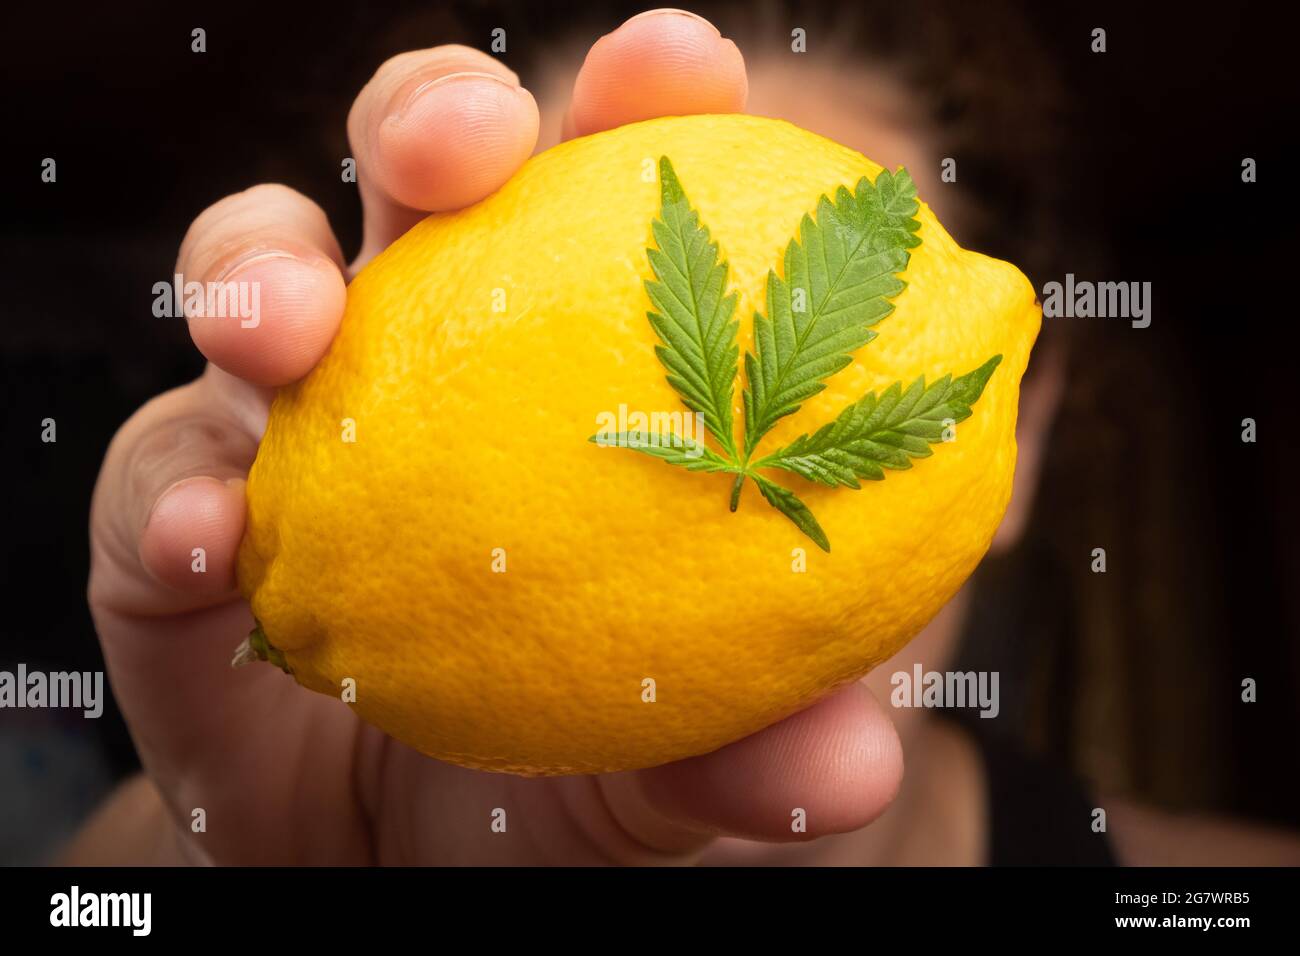 Zitrone mit Marihuana-Blatt in der Hand Nahaufnahme, Cannabissorte mit Zitronengeschmack. Stockfoto